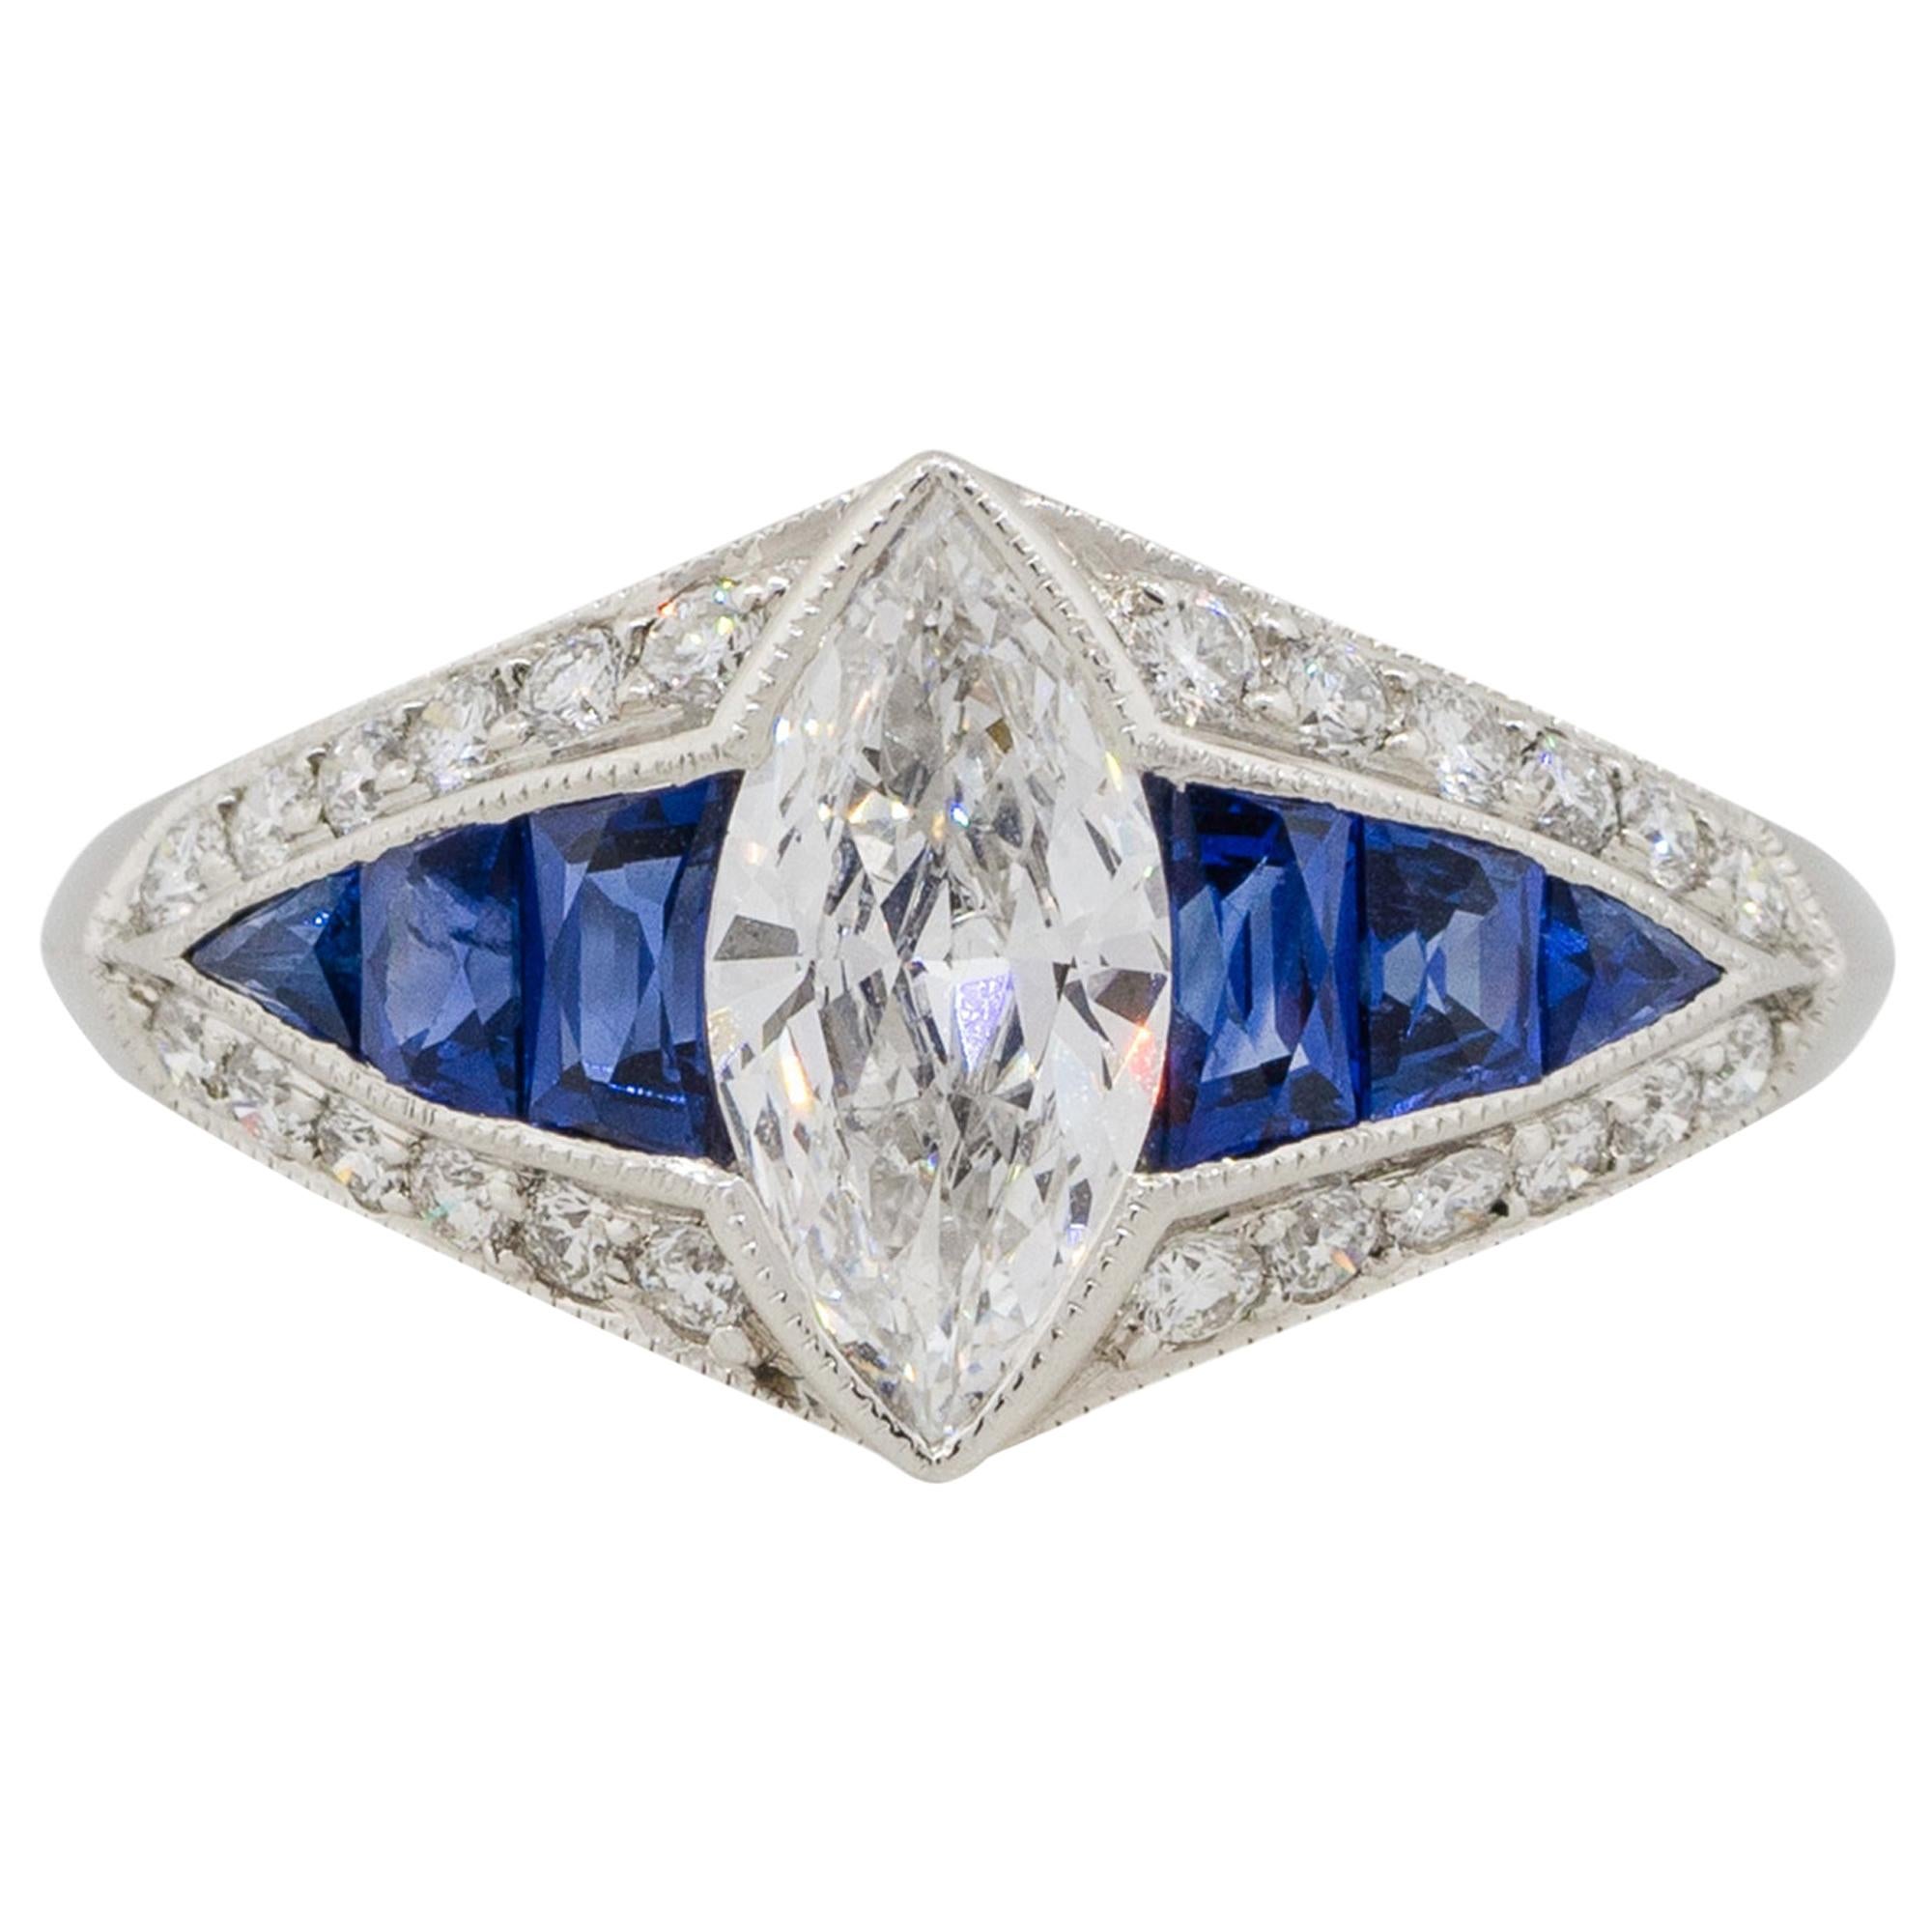 Platinum 0.80 Carat Marquise Diamond Center Ring with Sapphires